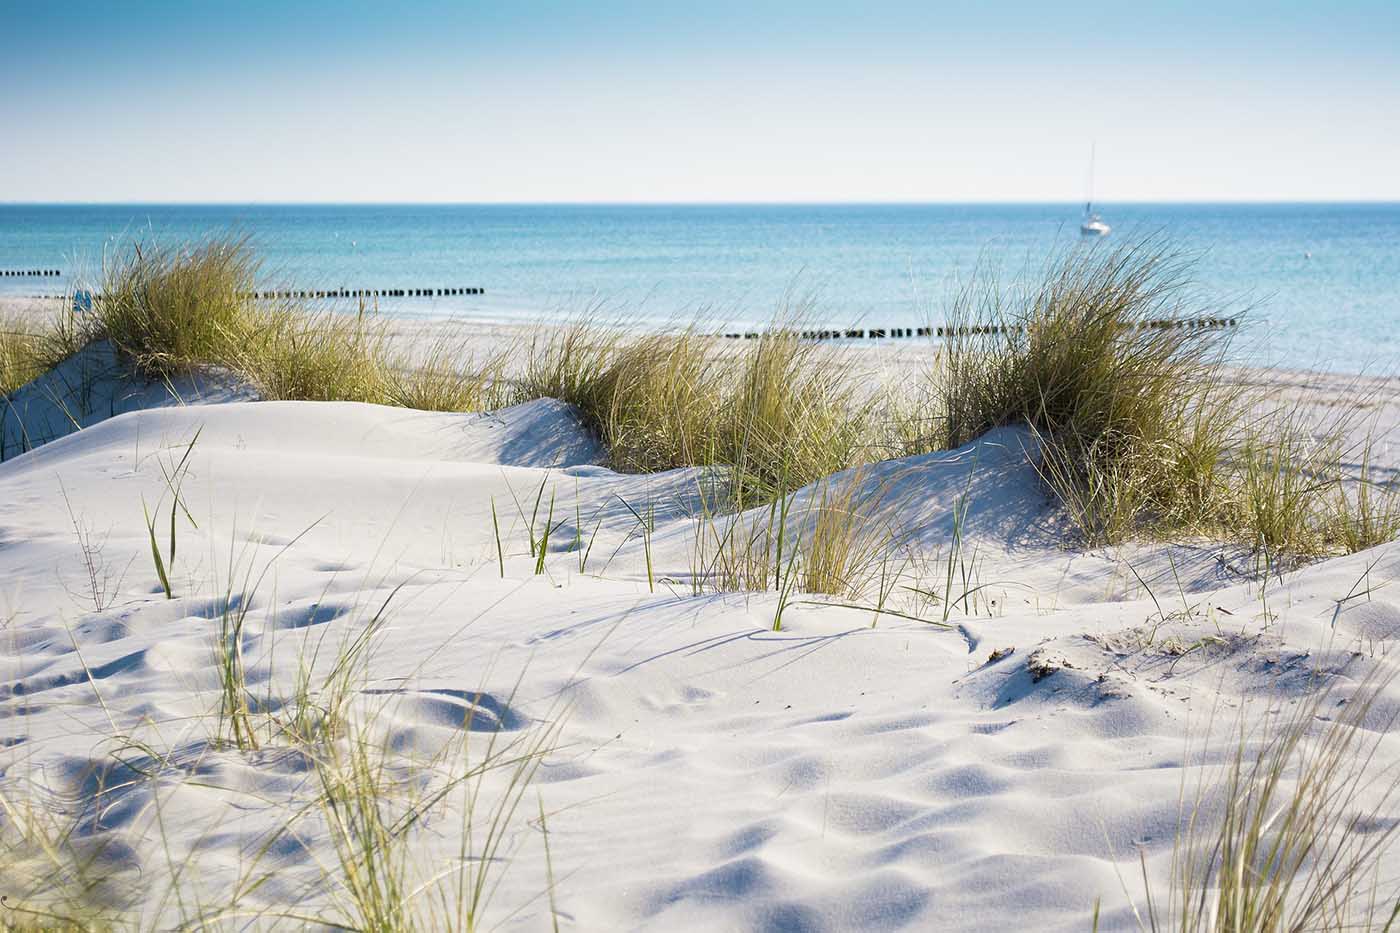 Snow on the beach dunes overlooking the sea